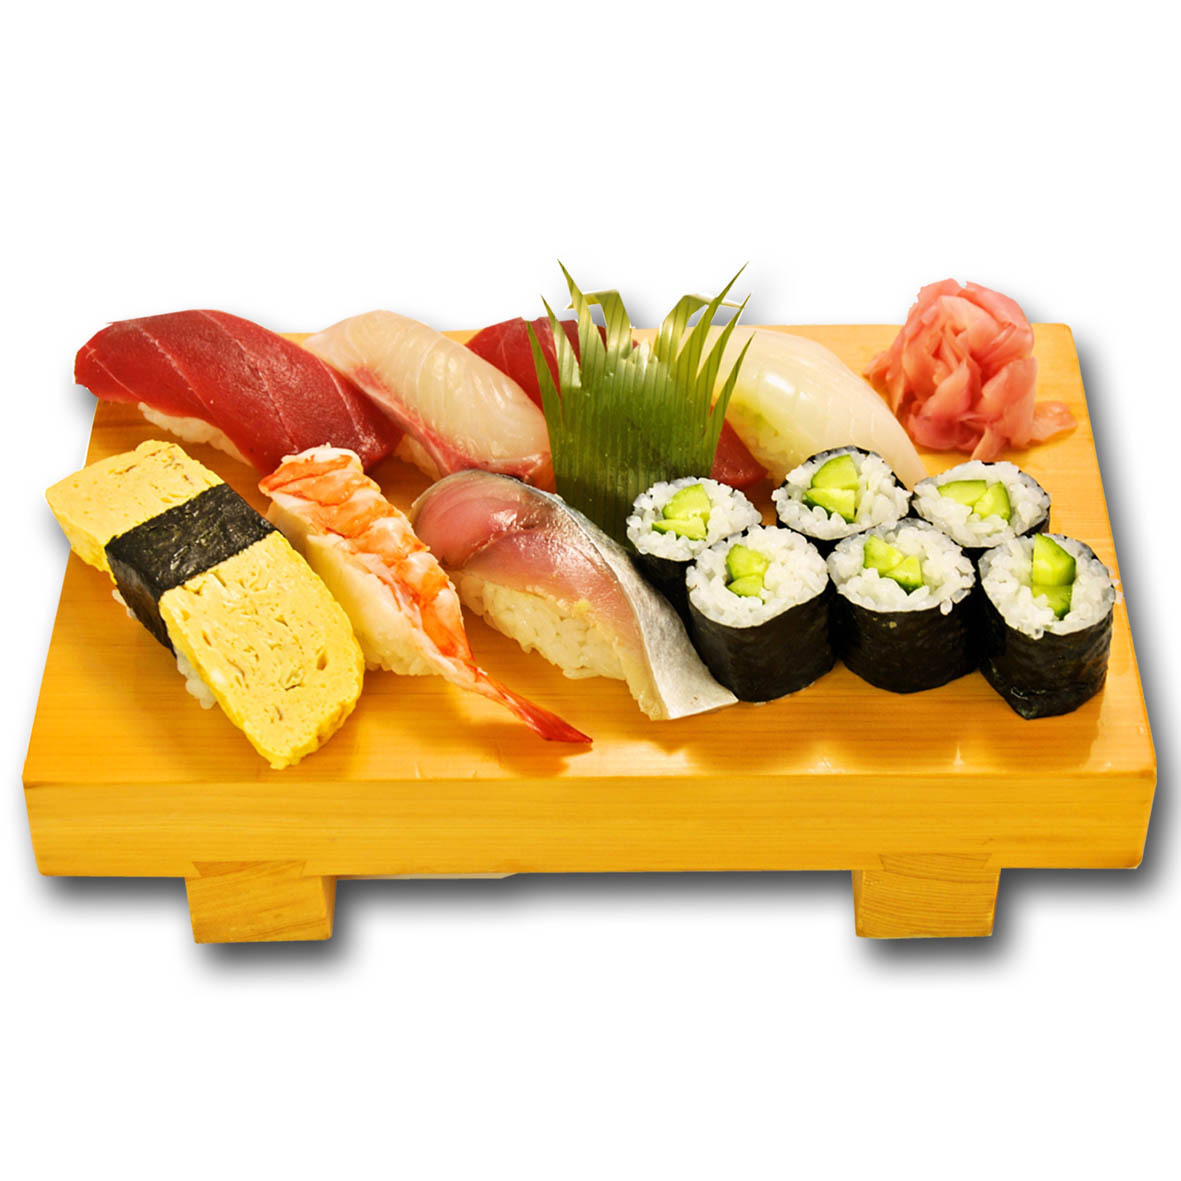 上寿司セット提供 | 食彩工房『旬ノ宴』